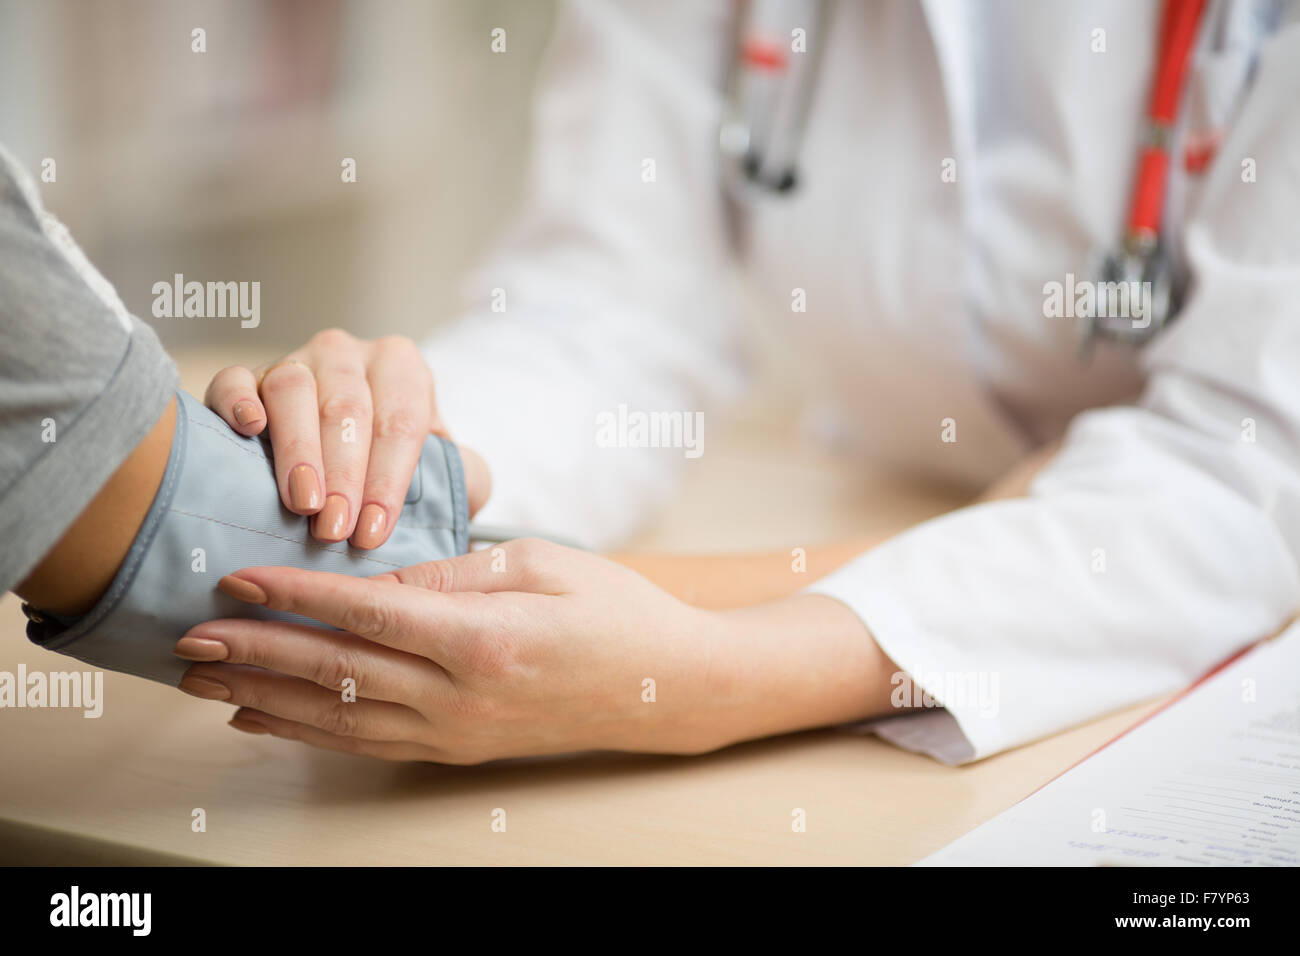 Doctor Preparar la medición de la presión sanguínea Foto de stock